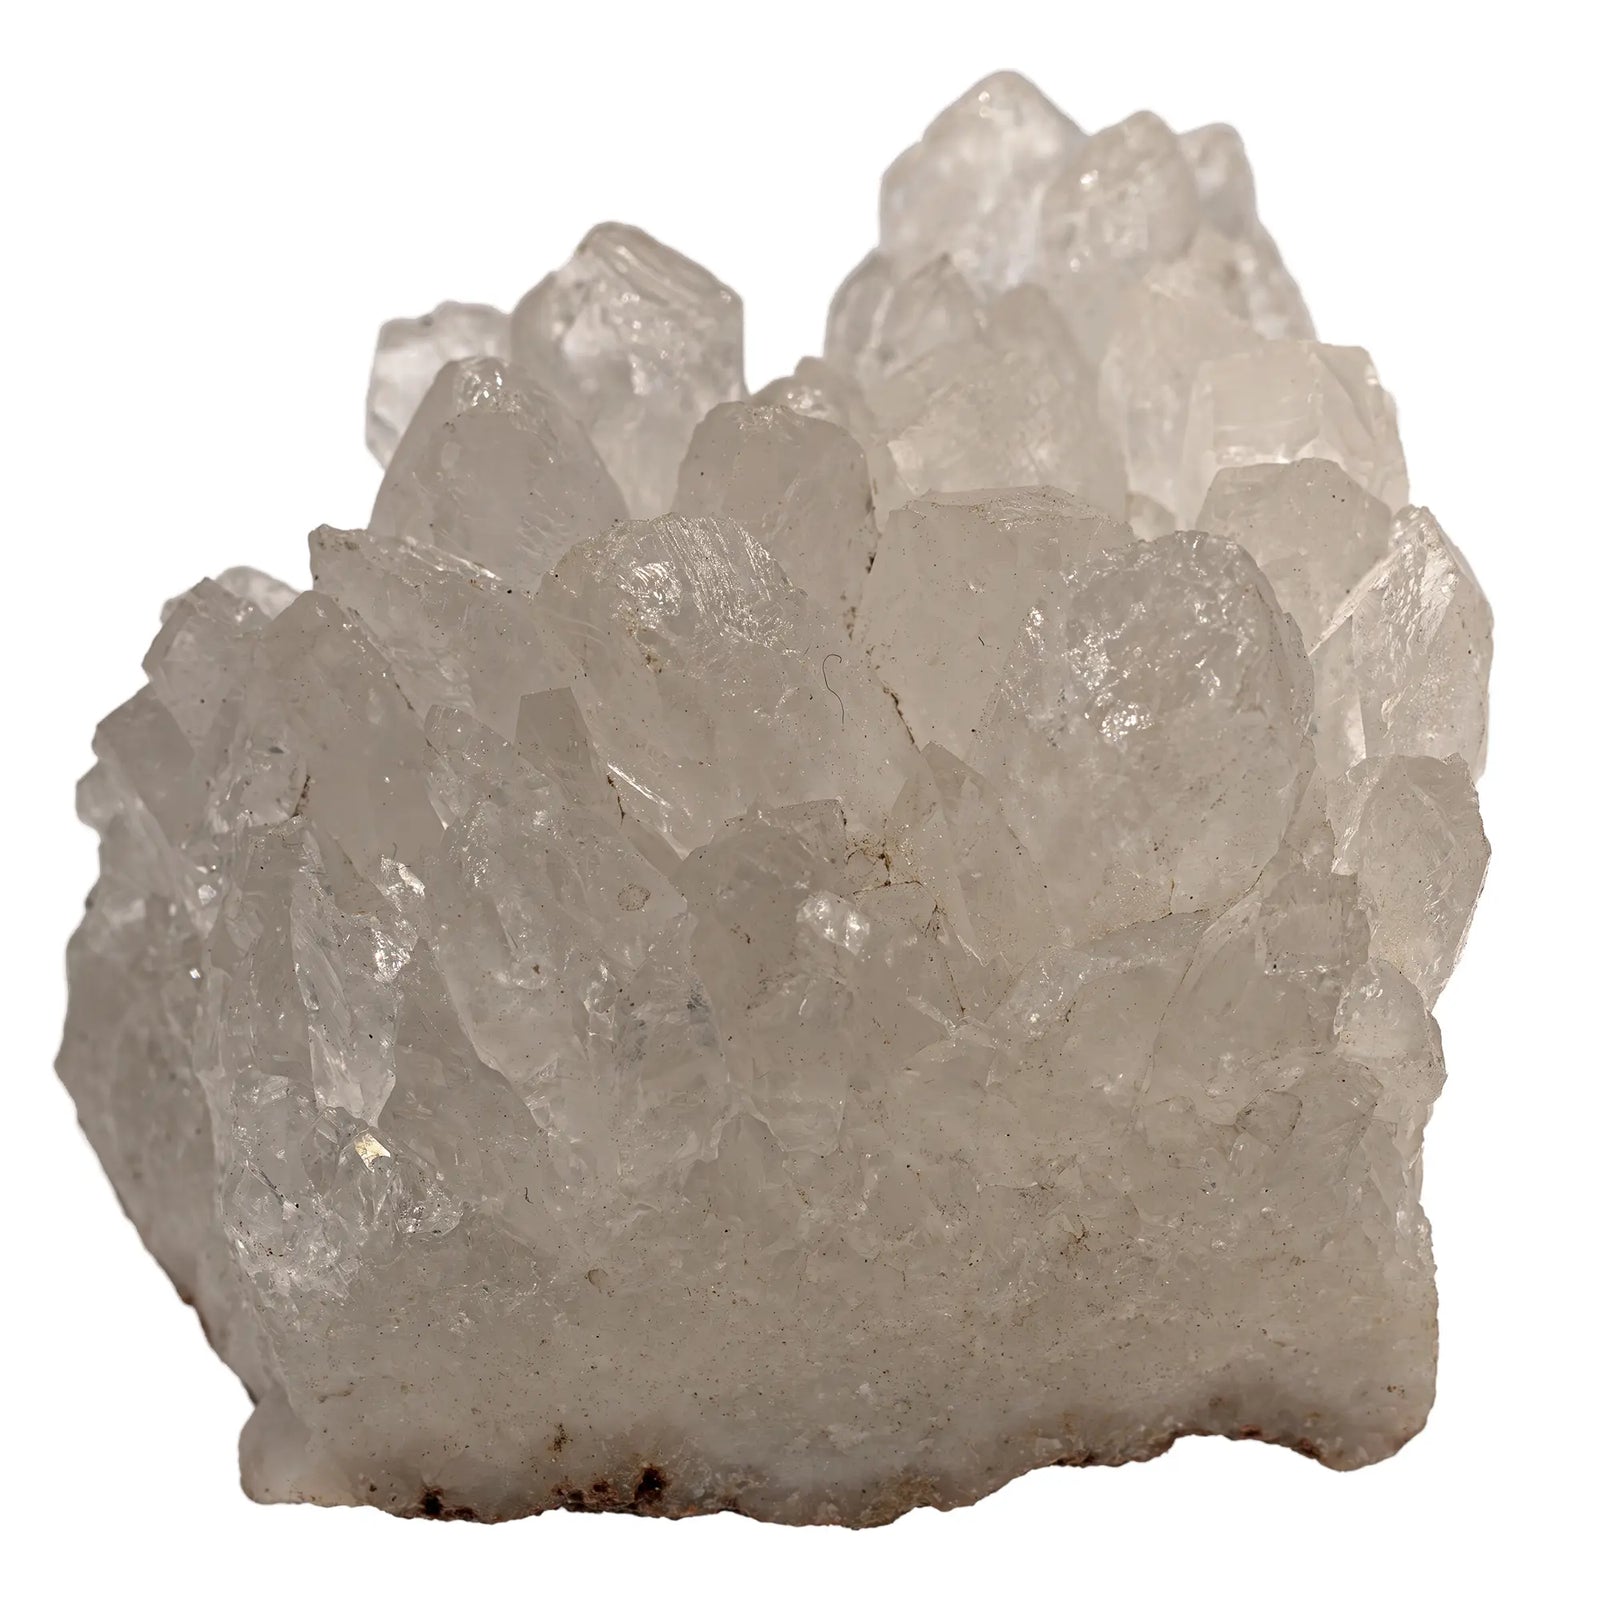 Cristal de roche - pierre brute - CRISTAL SOURCES